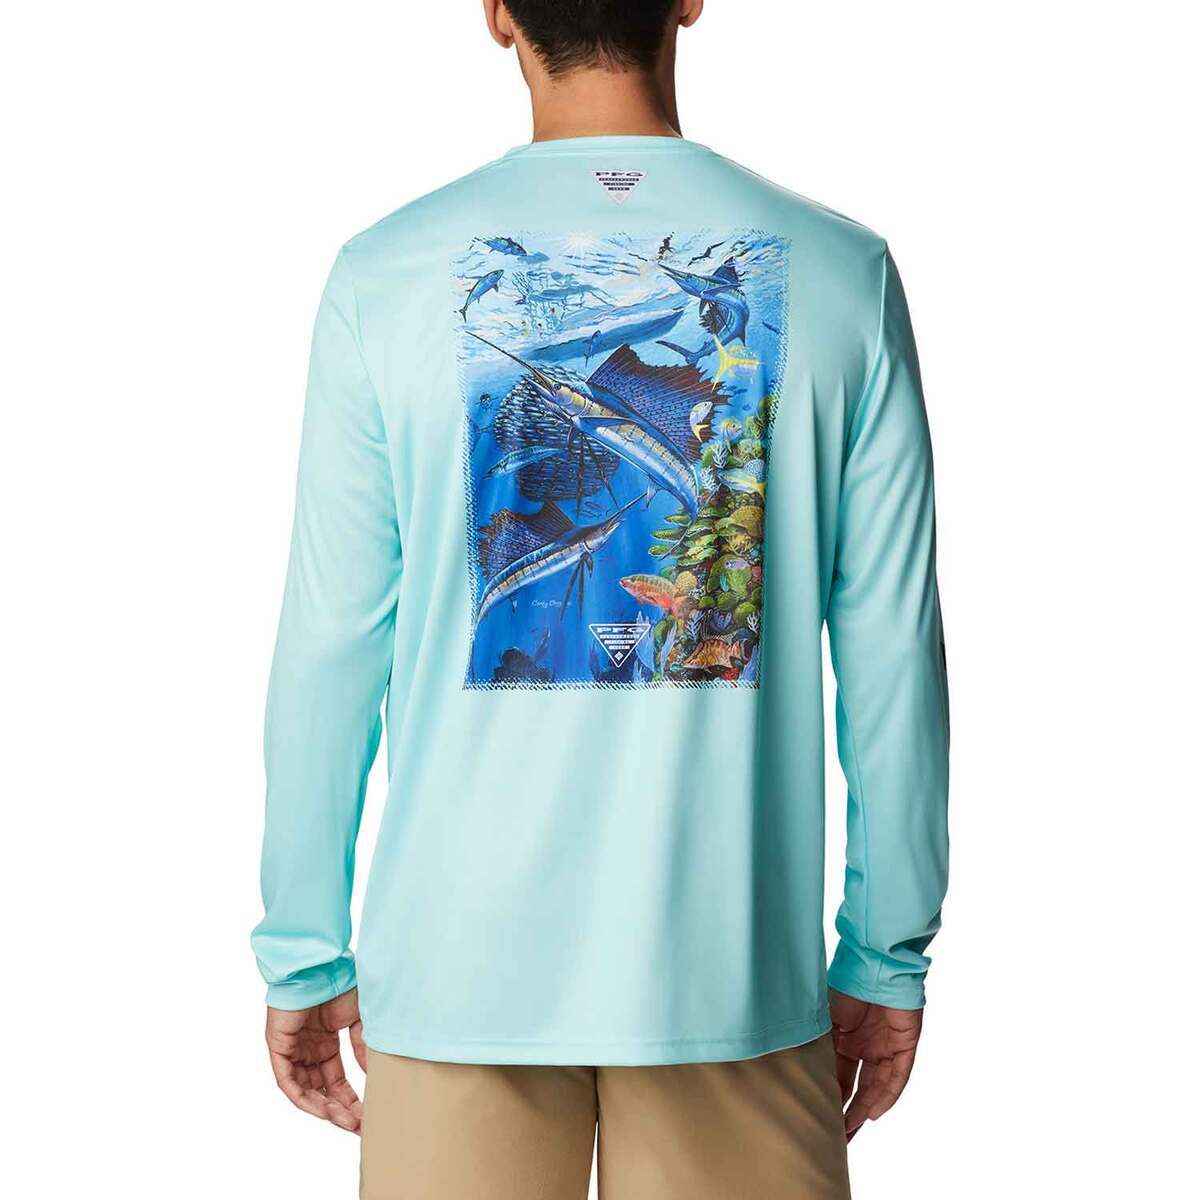 Reel Life, Shirts, Mens Reel Life Fishing Shirt Size Large Bundle Save